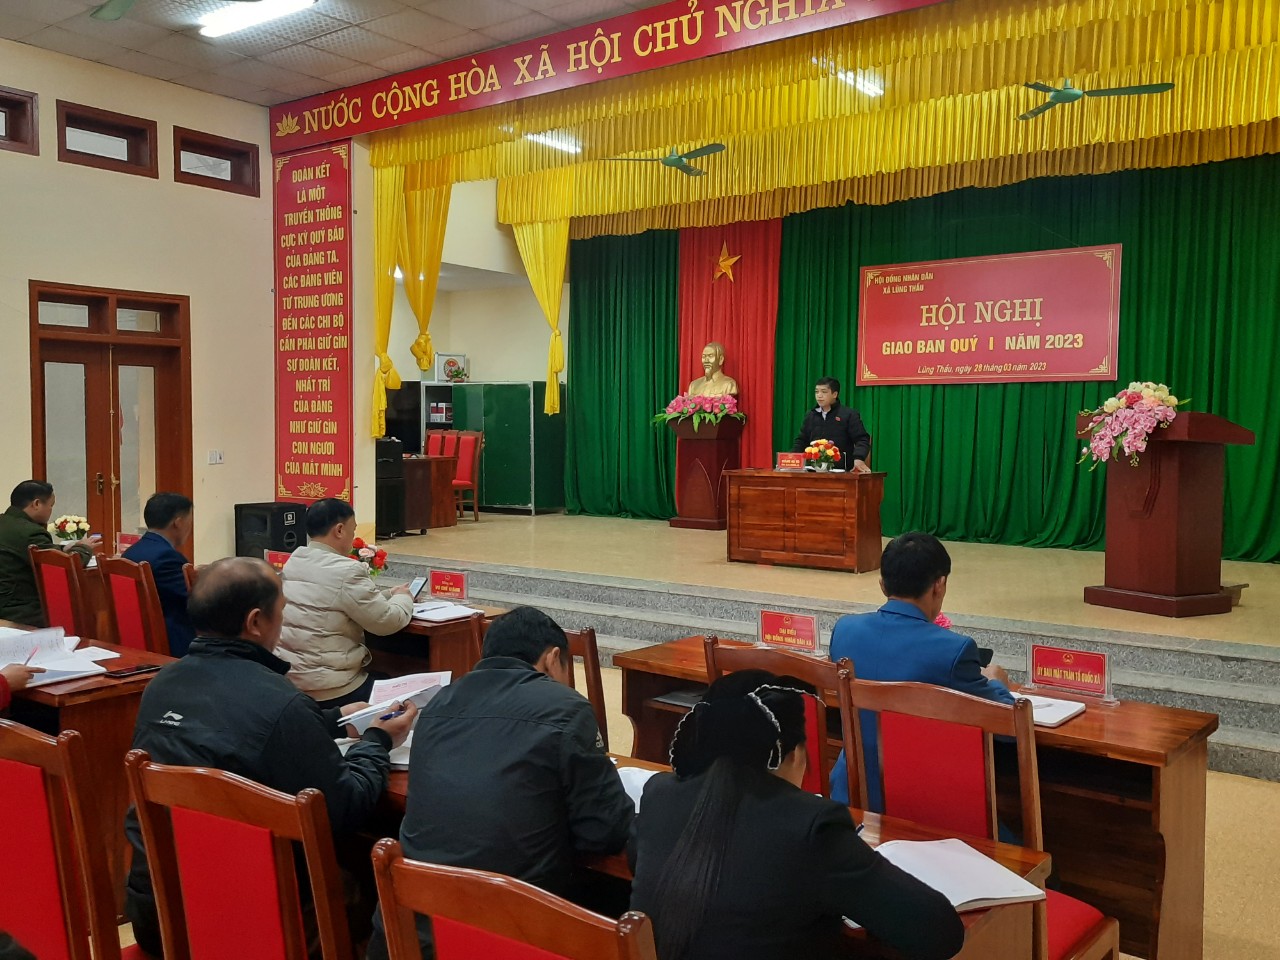 Hội đồng nhân dân xã Lũng Thầu tổ chức giao ban quý I năm 2023